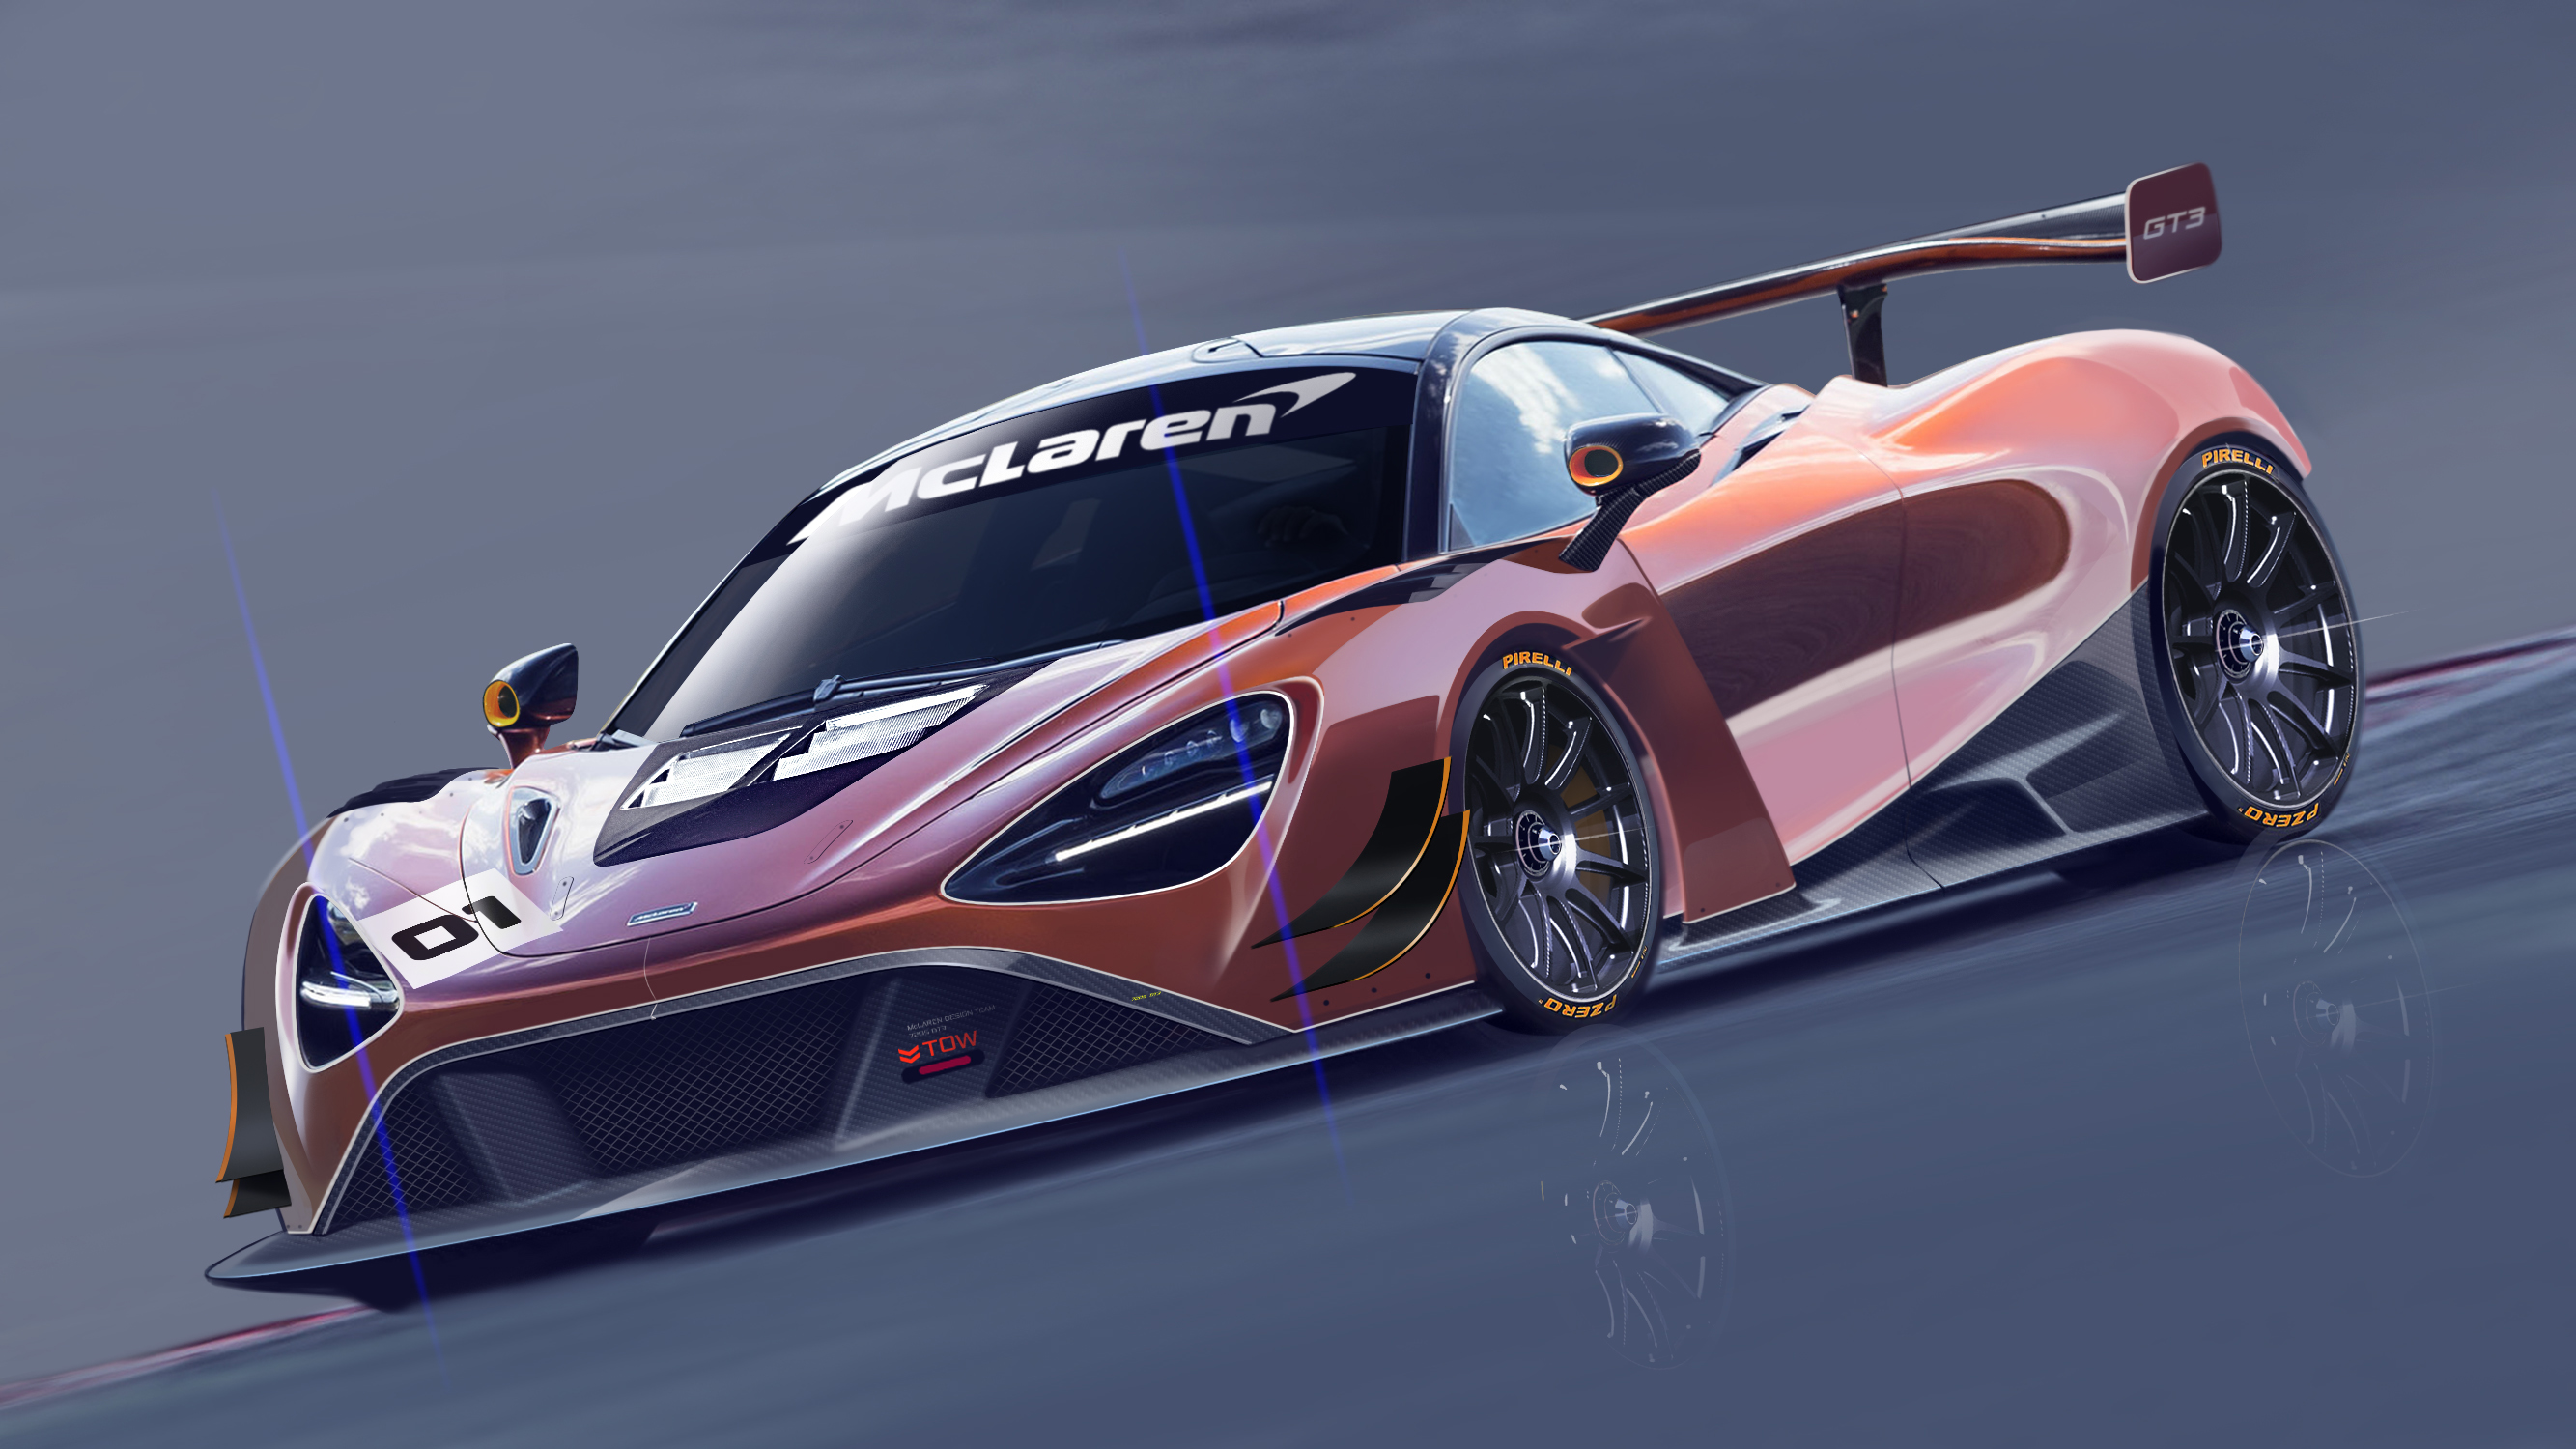 McLaren 720S GT3 Concept Wallpapers